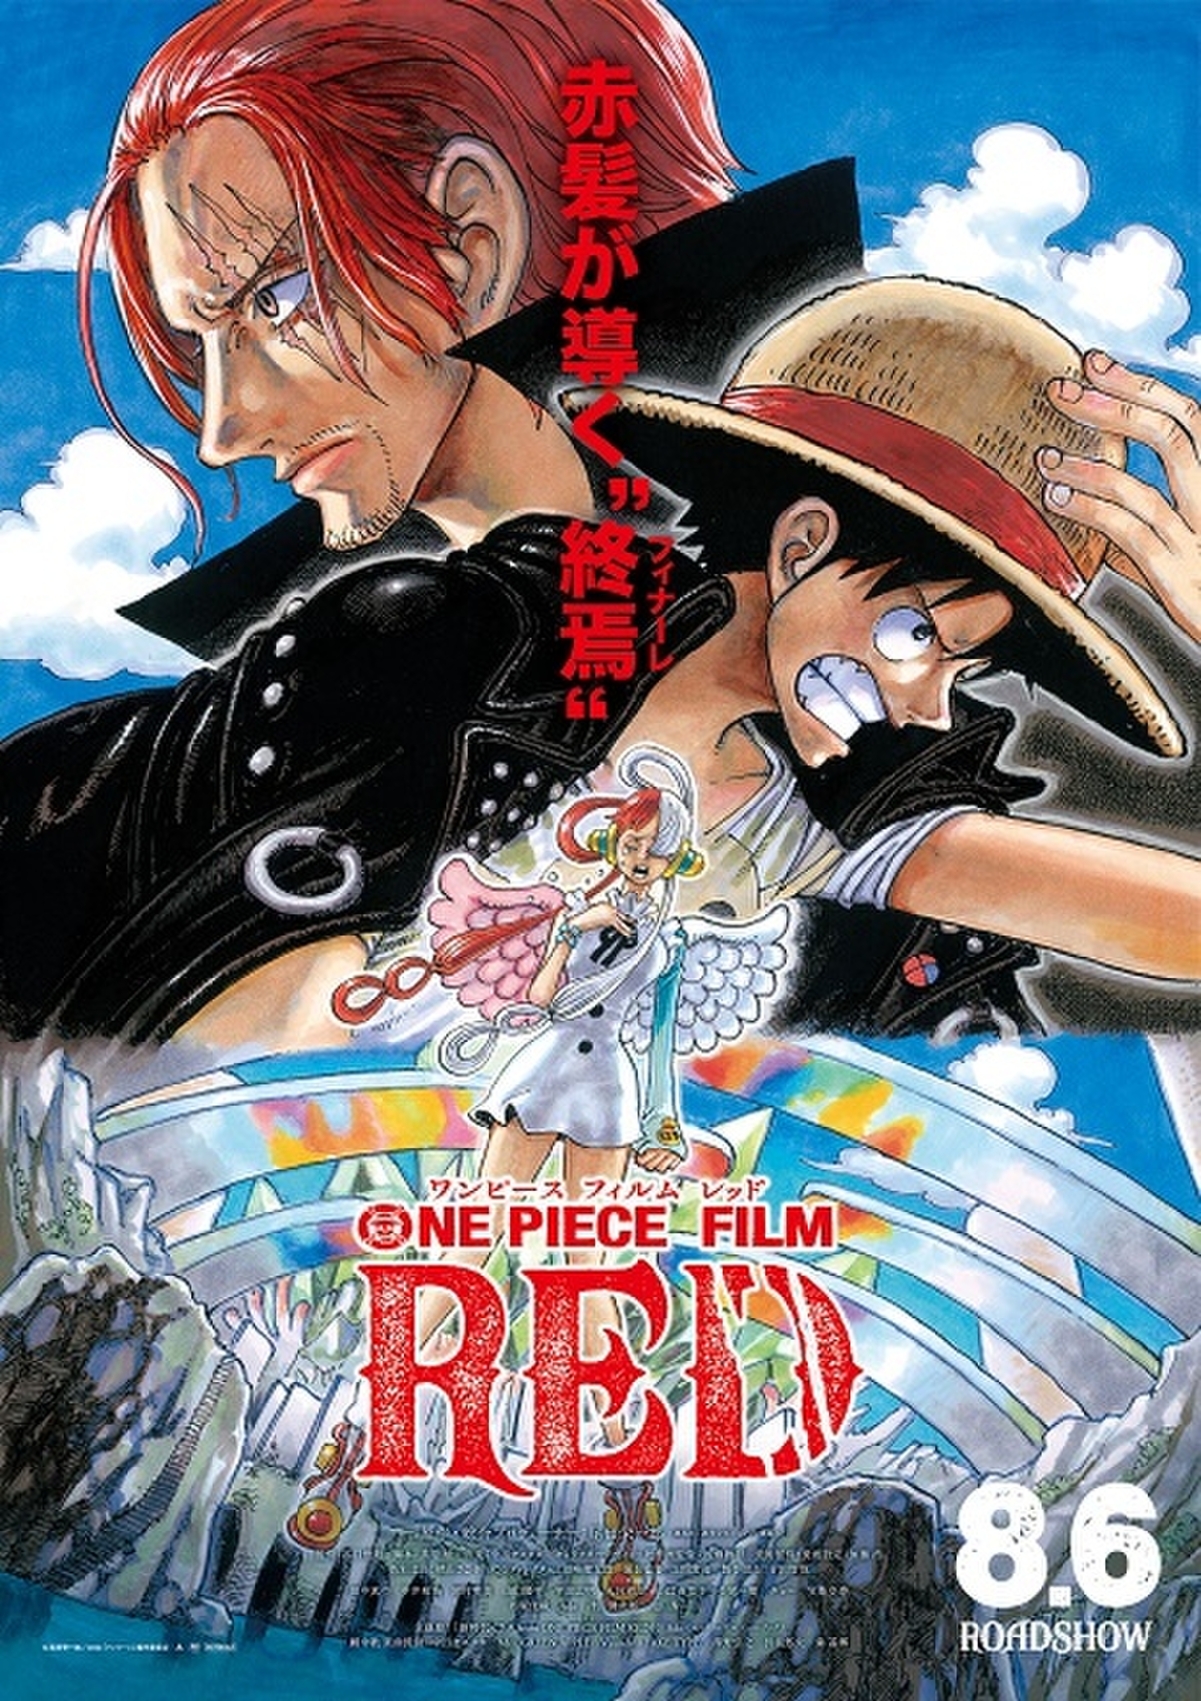 「ONE PIECE FILM RED」尾田栄一郎描き下ろし本ビジュアル公開 